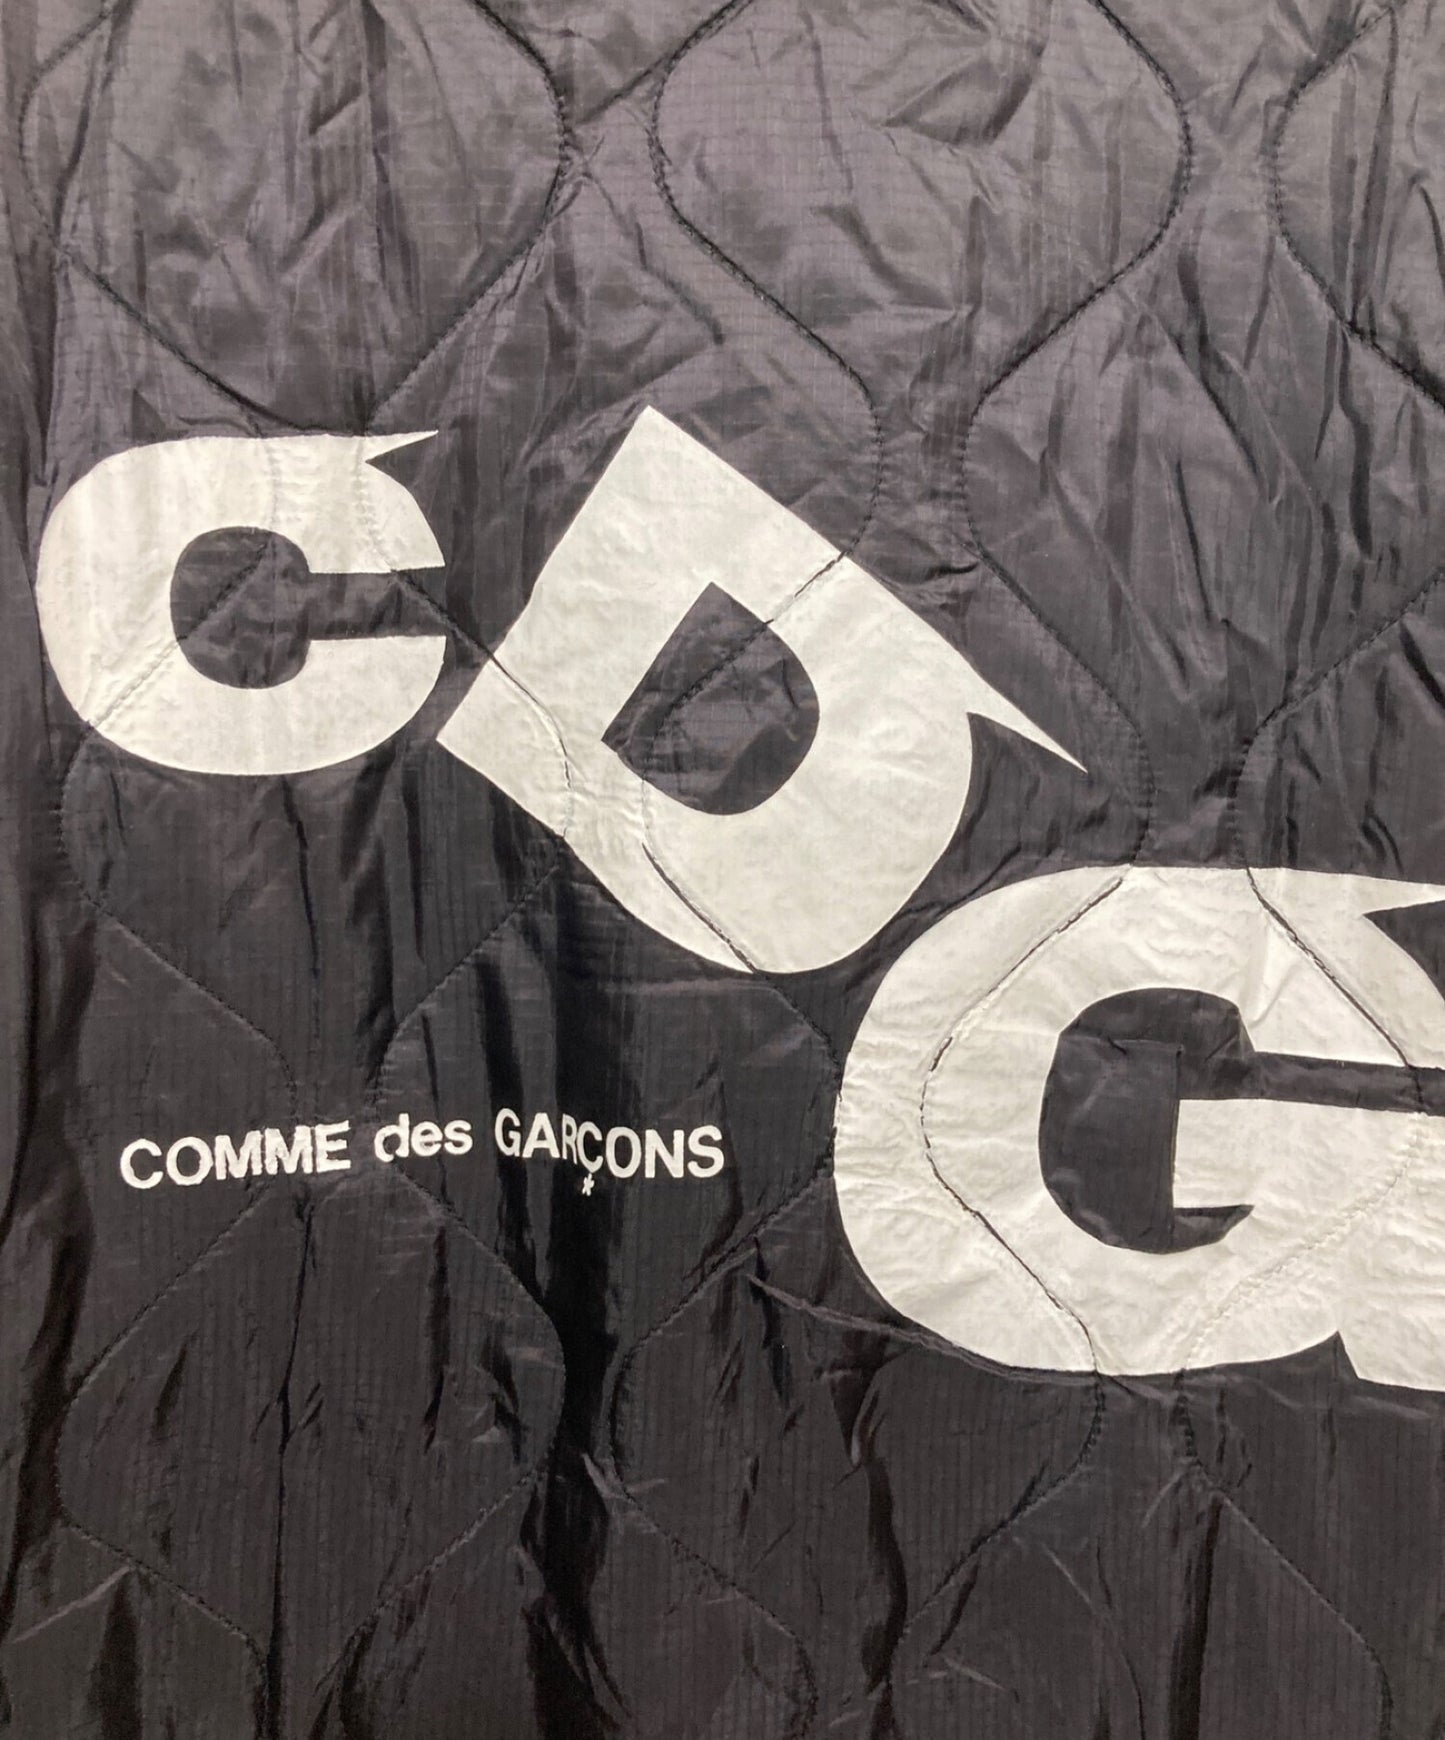 [Pre-owned] CDG X ALPHA INDUSTRIES liner jacket SB-J001